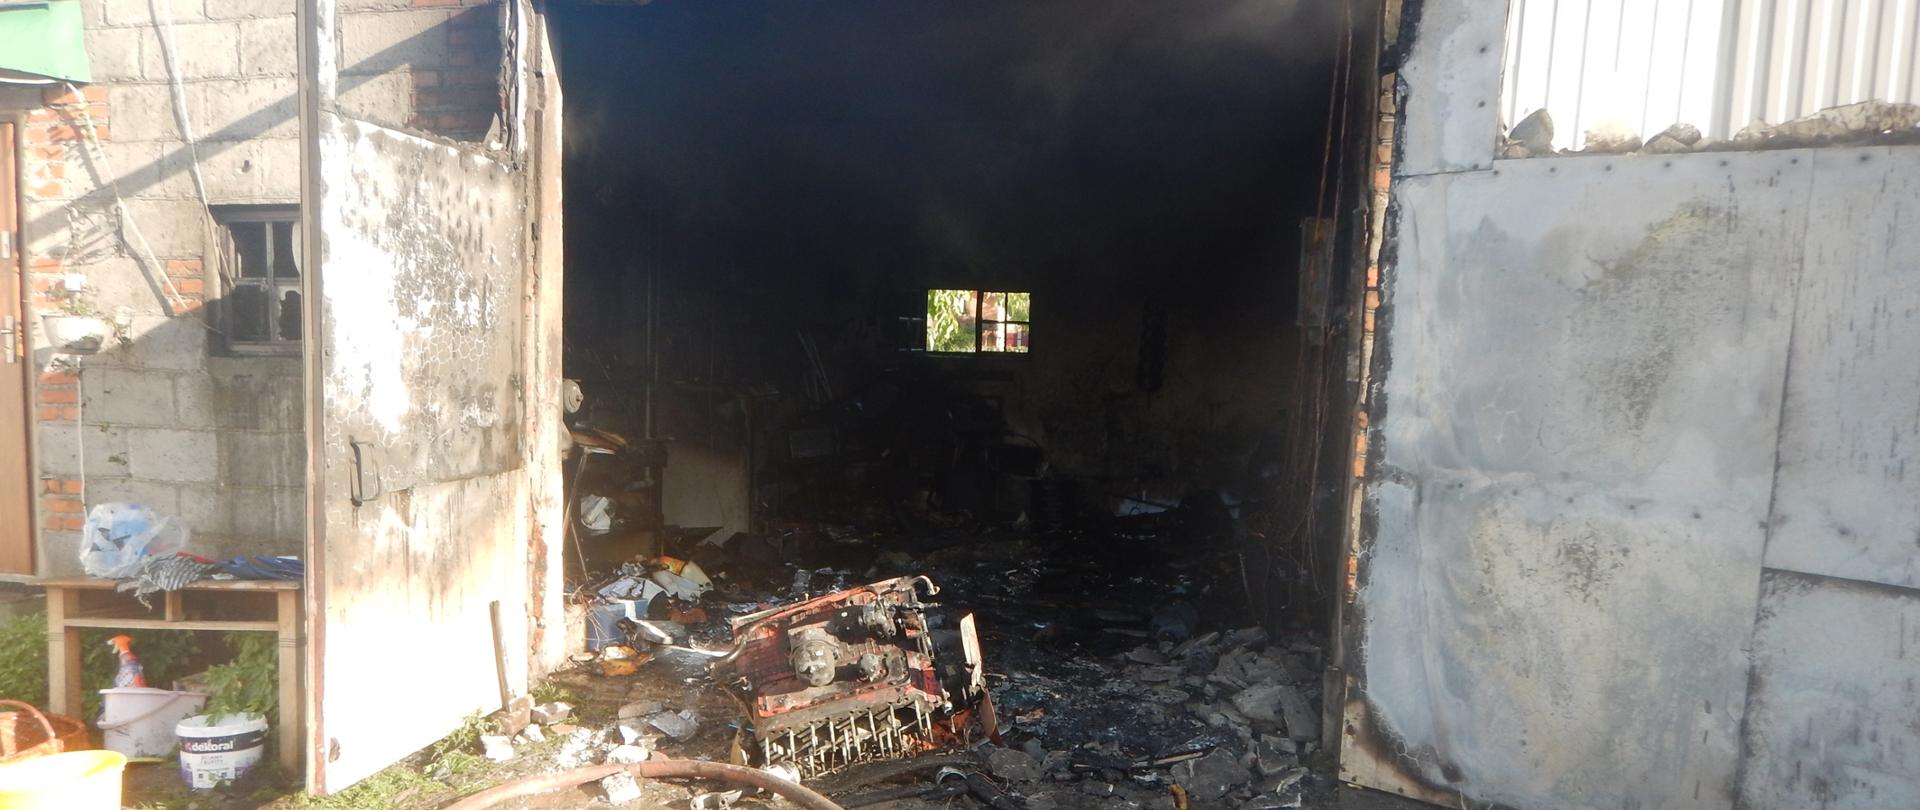 Zdjęcie przedstawia spalone wnętrze garażu.